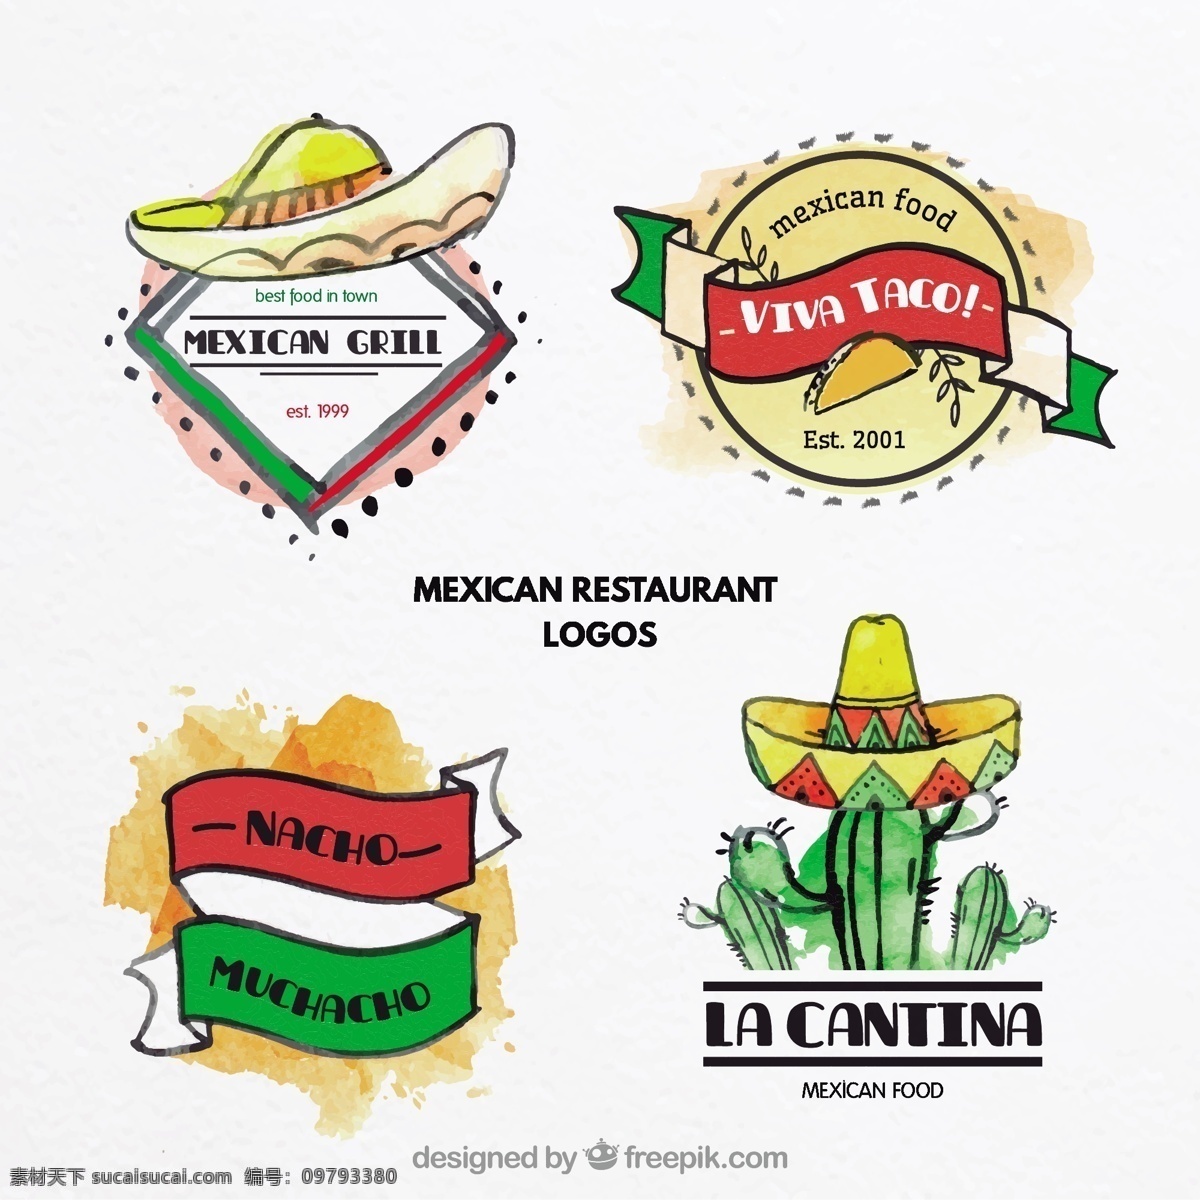 水彩画 墨西哥 食品 标志 标识 水彩 食物 丝带 企业 菜单 手 餐厅 鸡 食品标识 公司 帽子 企业标识 品牌 蔬菜 仙人掌 食品菜单